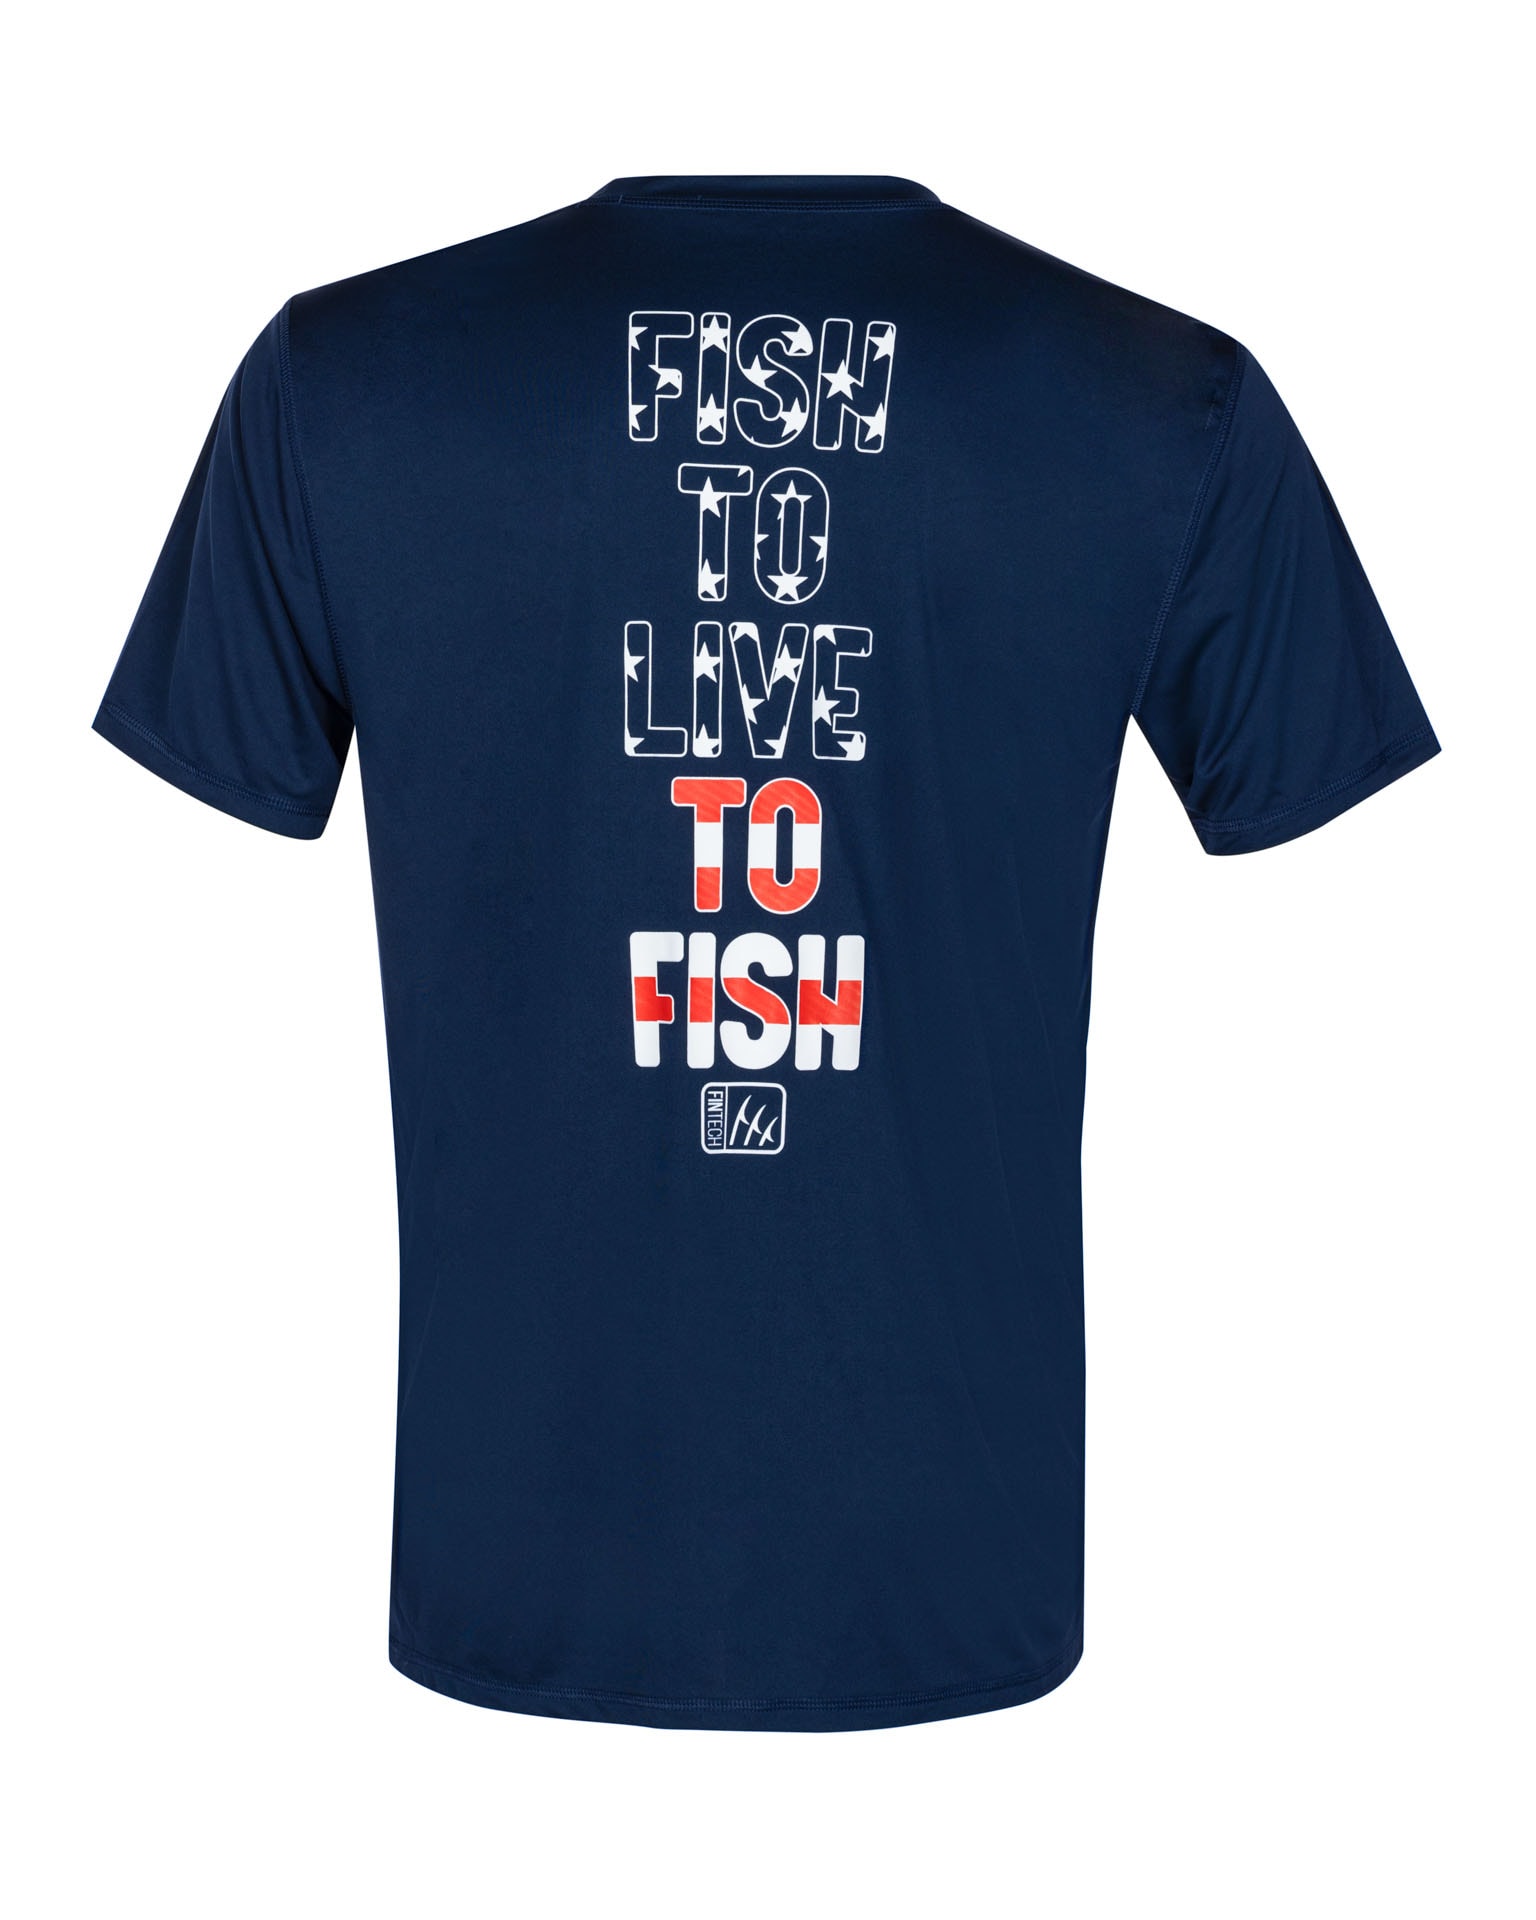 FINTECH Men's Short Sleeve Graphic T-shirt (Medium) in the Tops